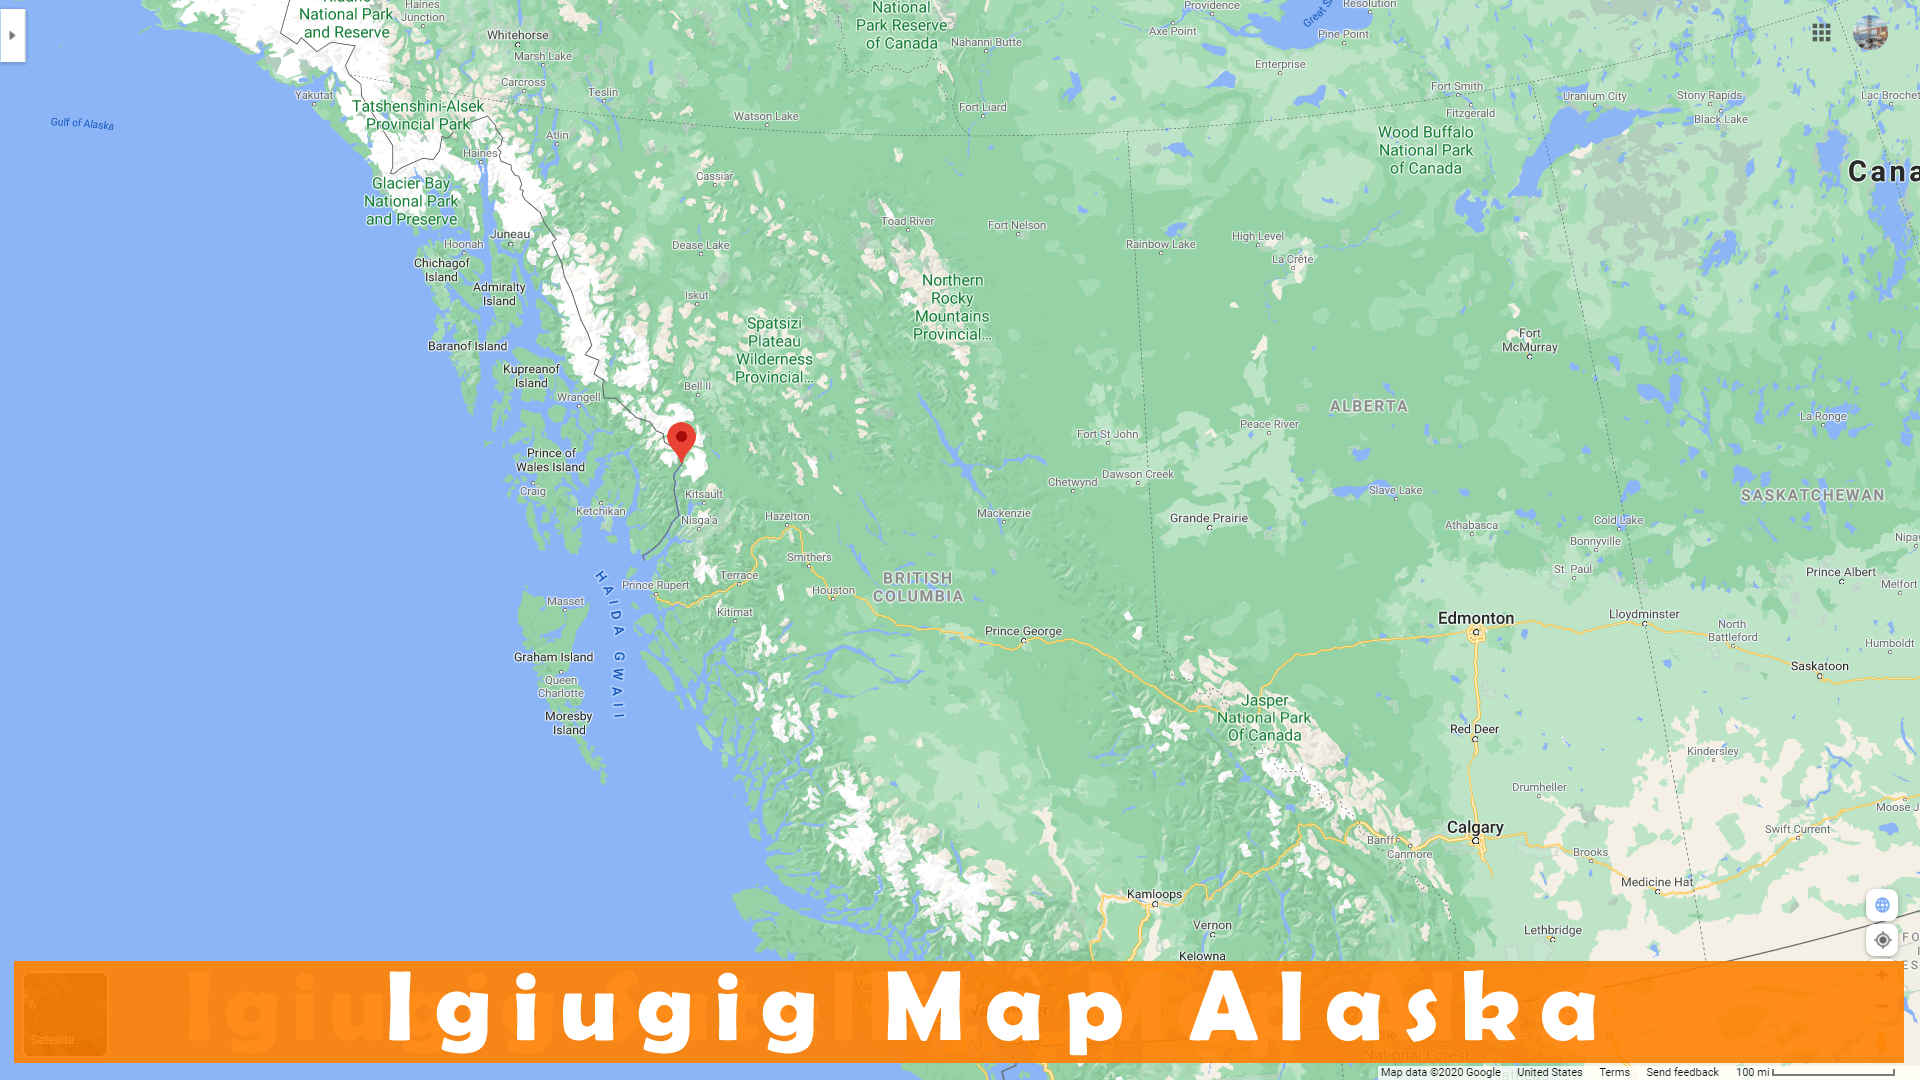 igiugig Alaska Map